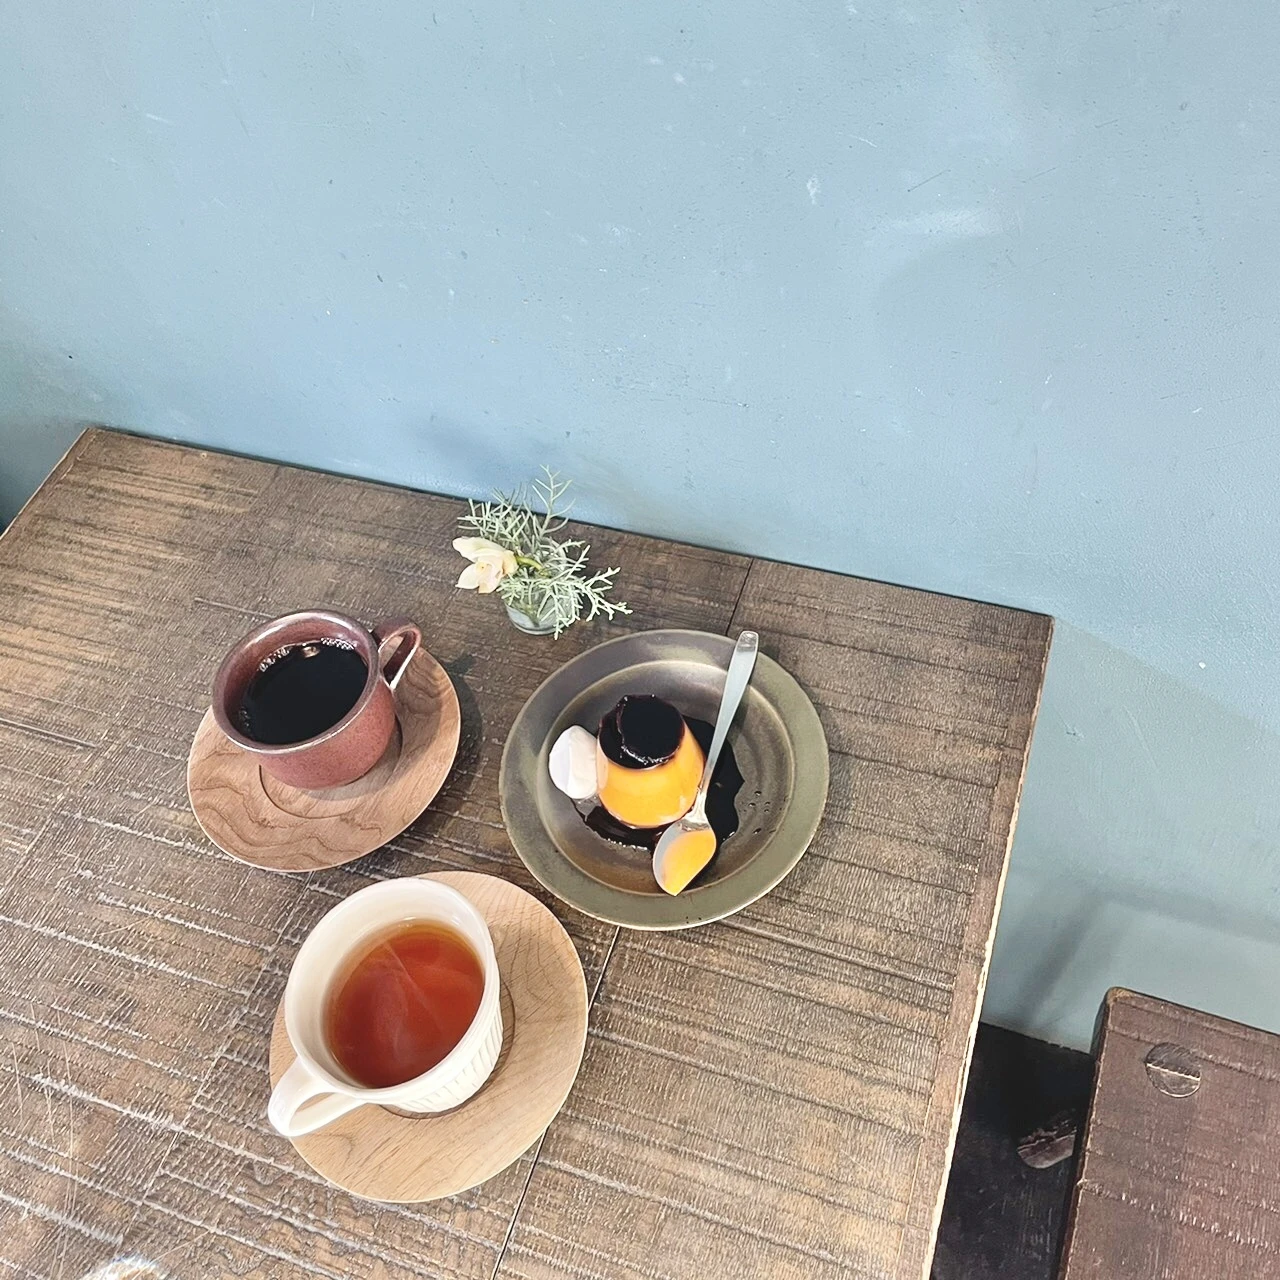 【札幌カフェ】自己紹介と北海道大学周辺のプリンが美味しすぎるカフェ♪_1_8